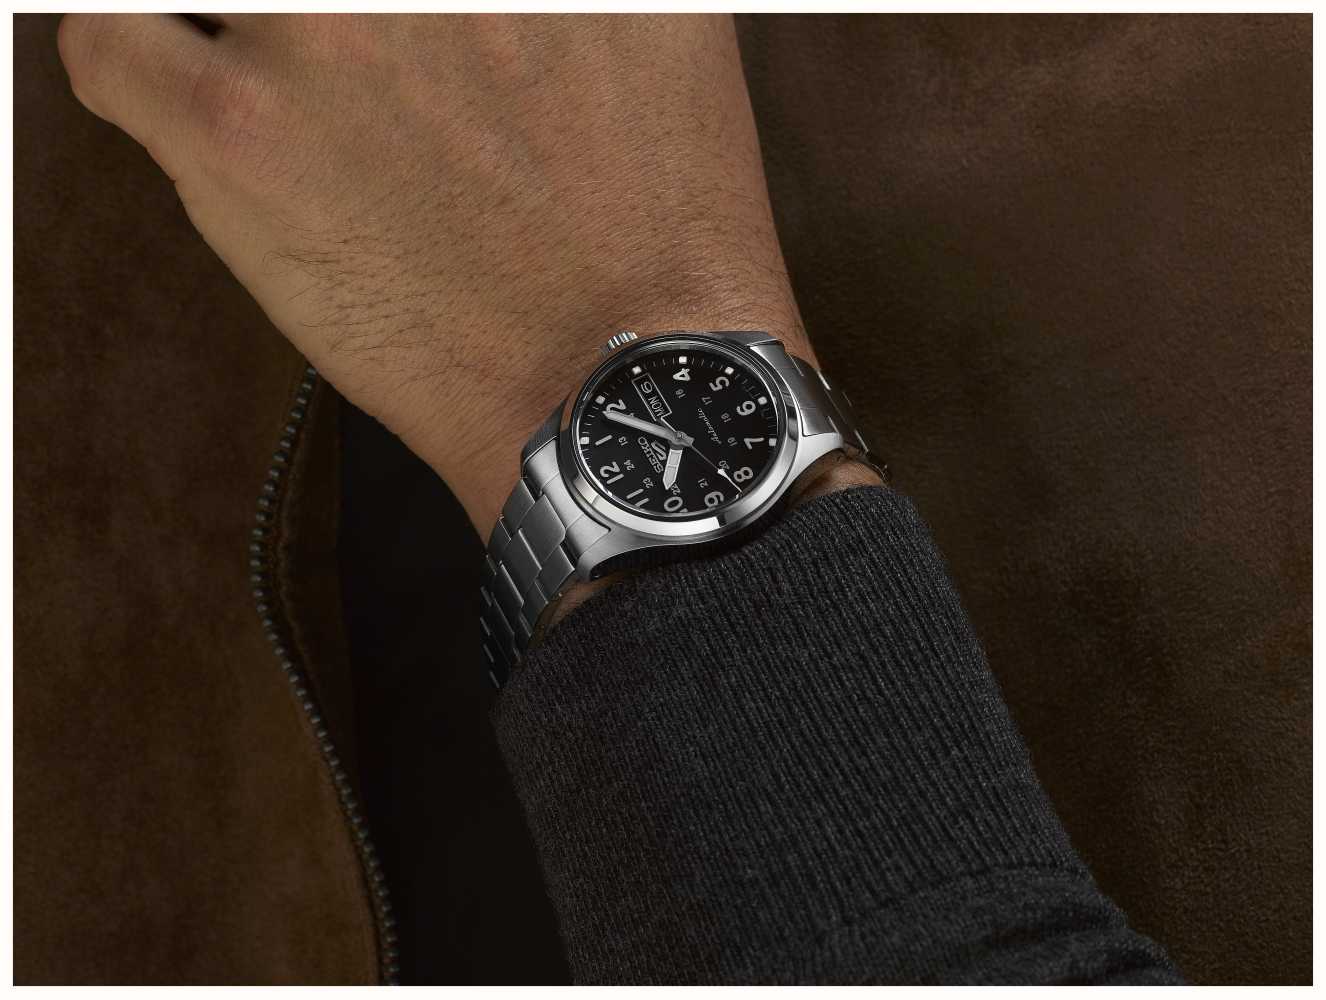 Mm DEU Seiko 5 SRPJ81K1 „im 36,37 Mittelfeld-Sportgehäuse - Watches™ Class Metall“ First